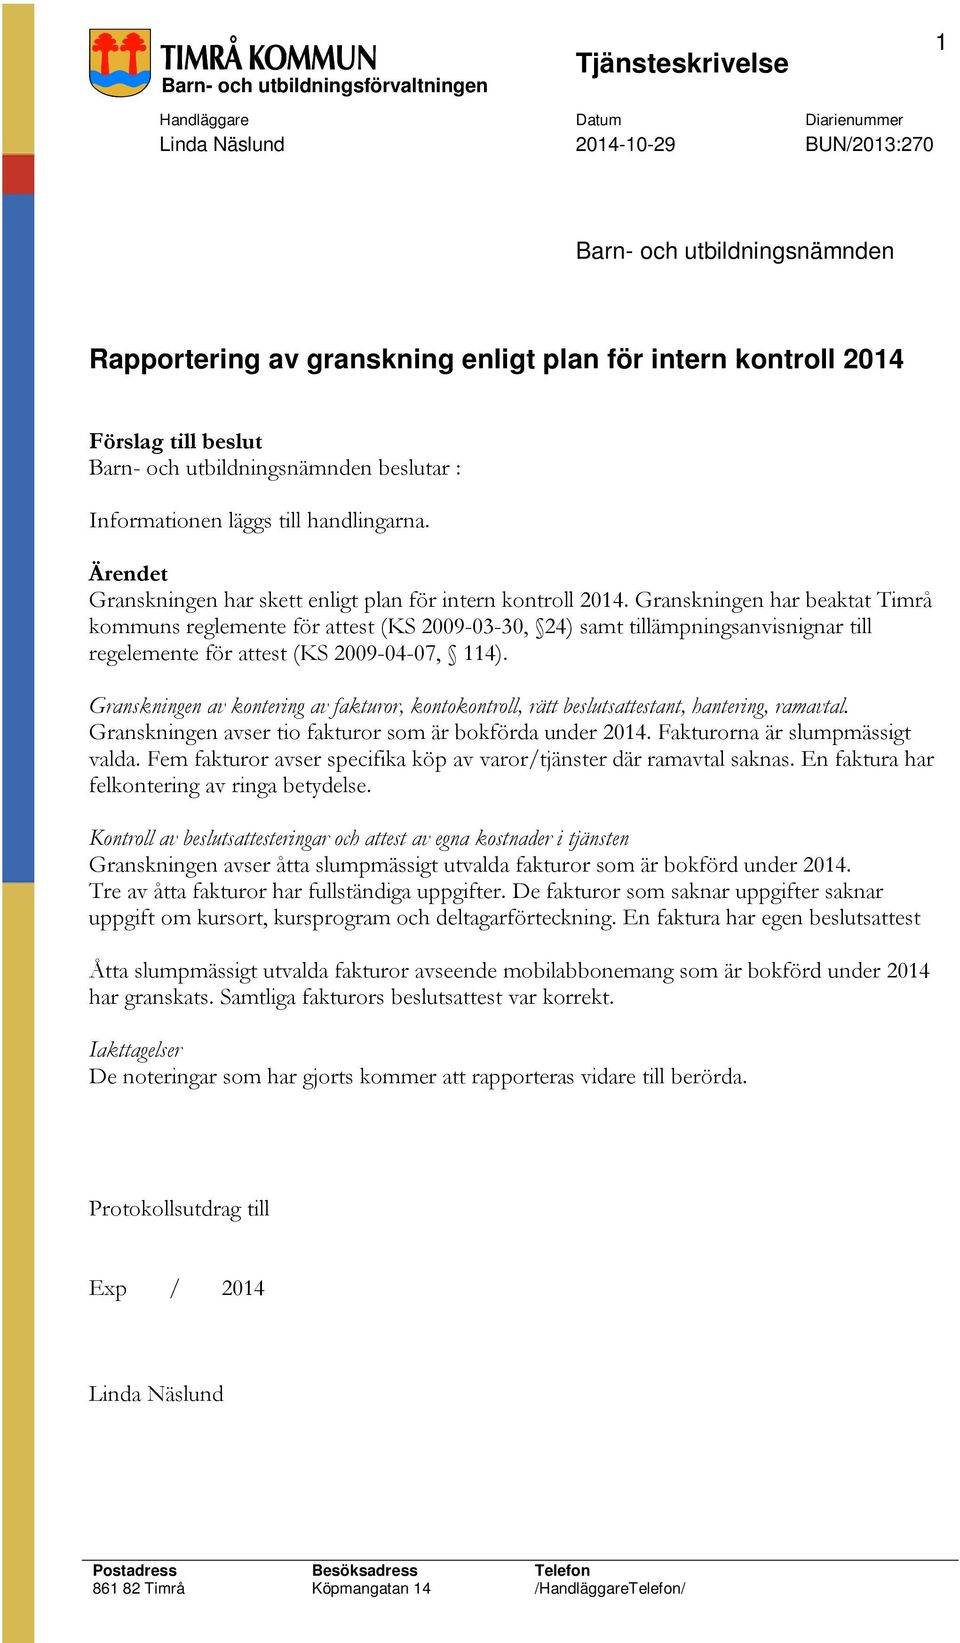 Granskningen har beaktat Timrå kommuns reglemente för attest (KS 2009-03-30, 24) samt tillämpningsanvisnignar till regelemente för attest (KS 2009-04-07, 114).